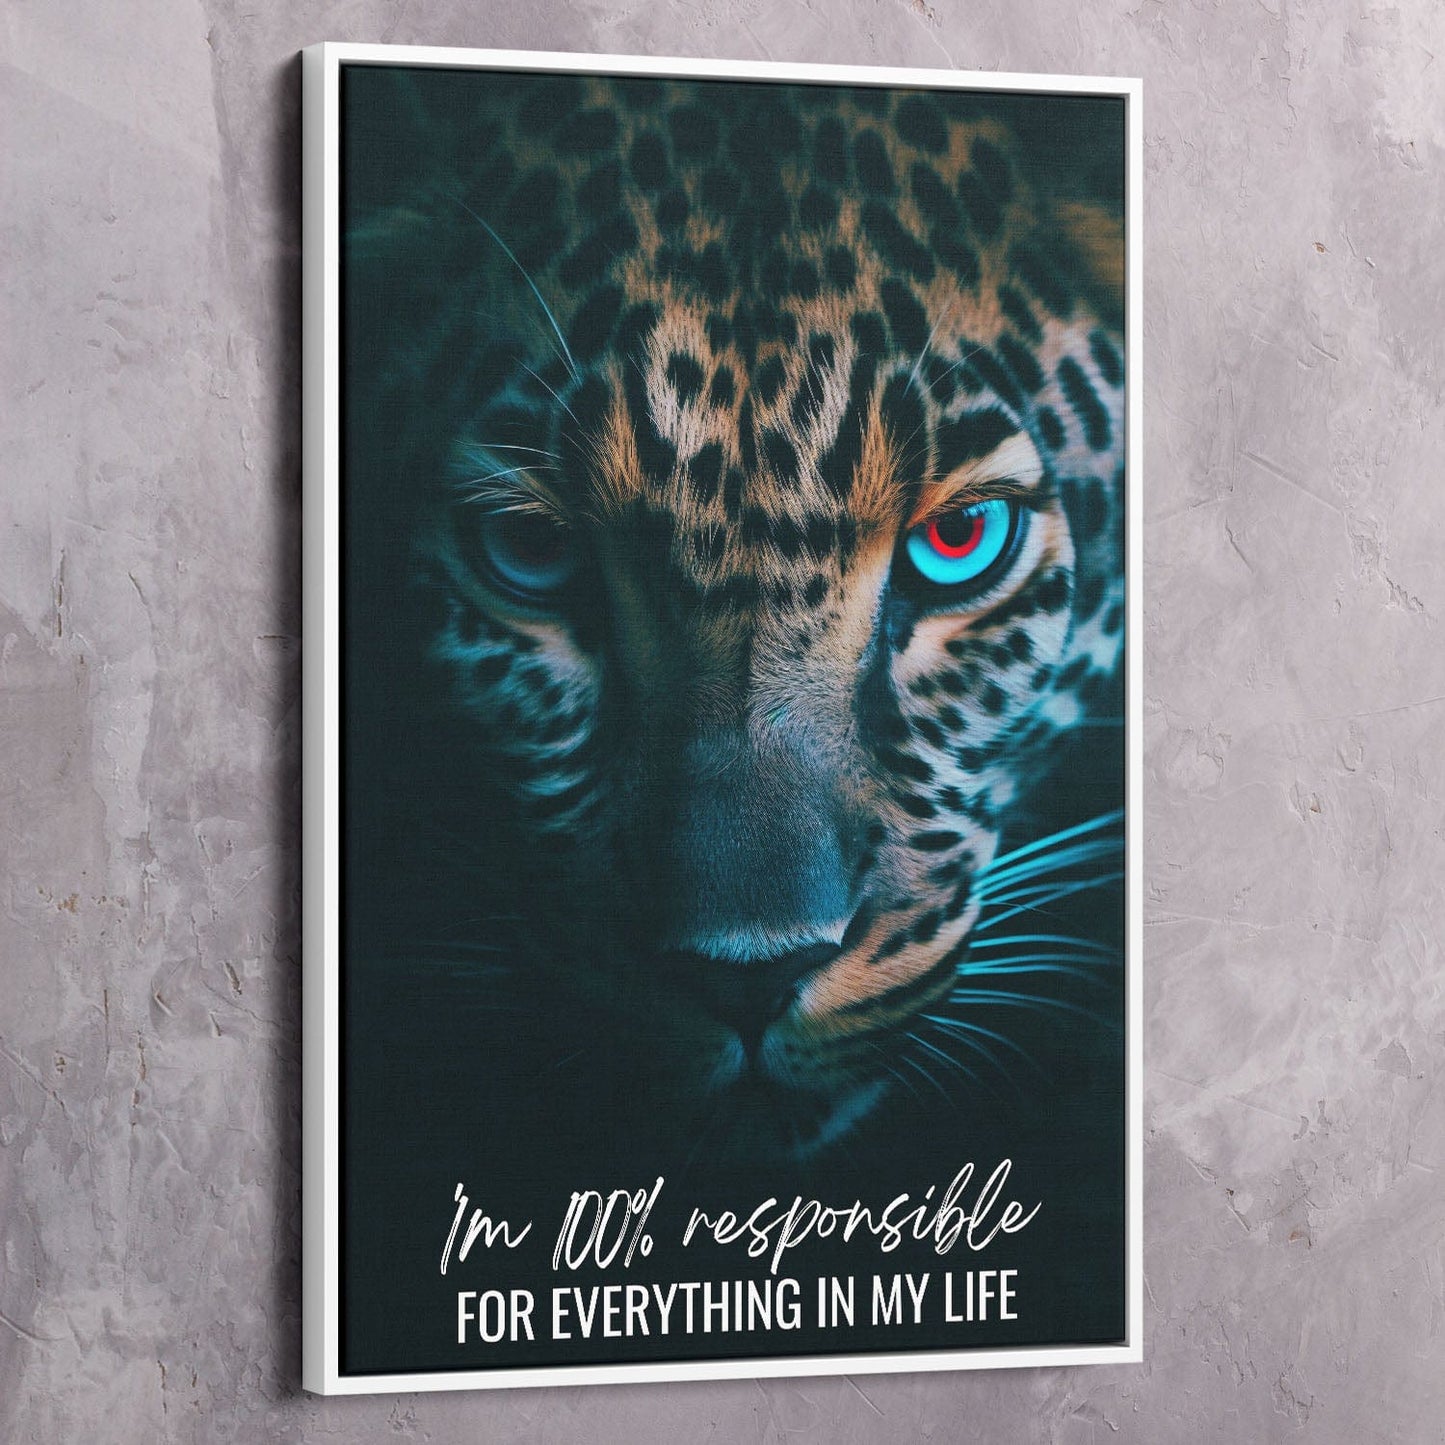 Leopard - You are 100% responsible Quote Wall Art | Inspirational Wall Art Motivational Wall Art Quotes Office Art | ImpaktMaker Exclusive Canvas Art Portrait